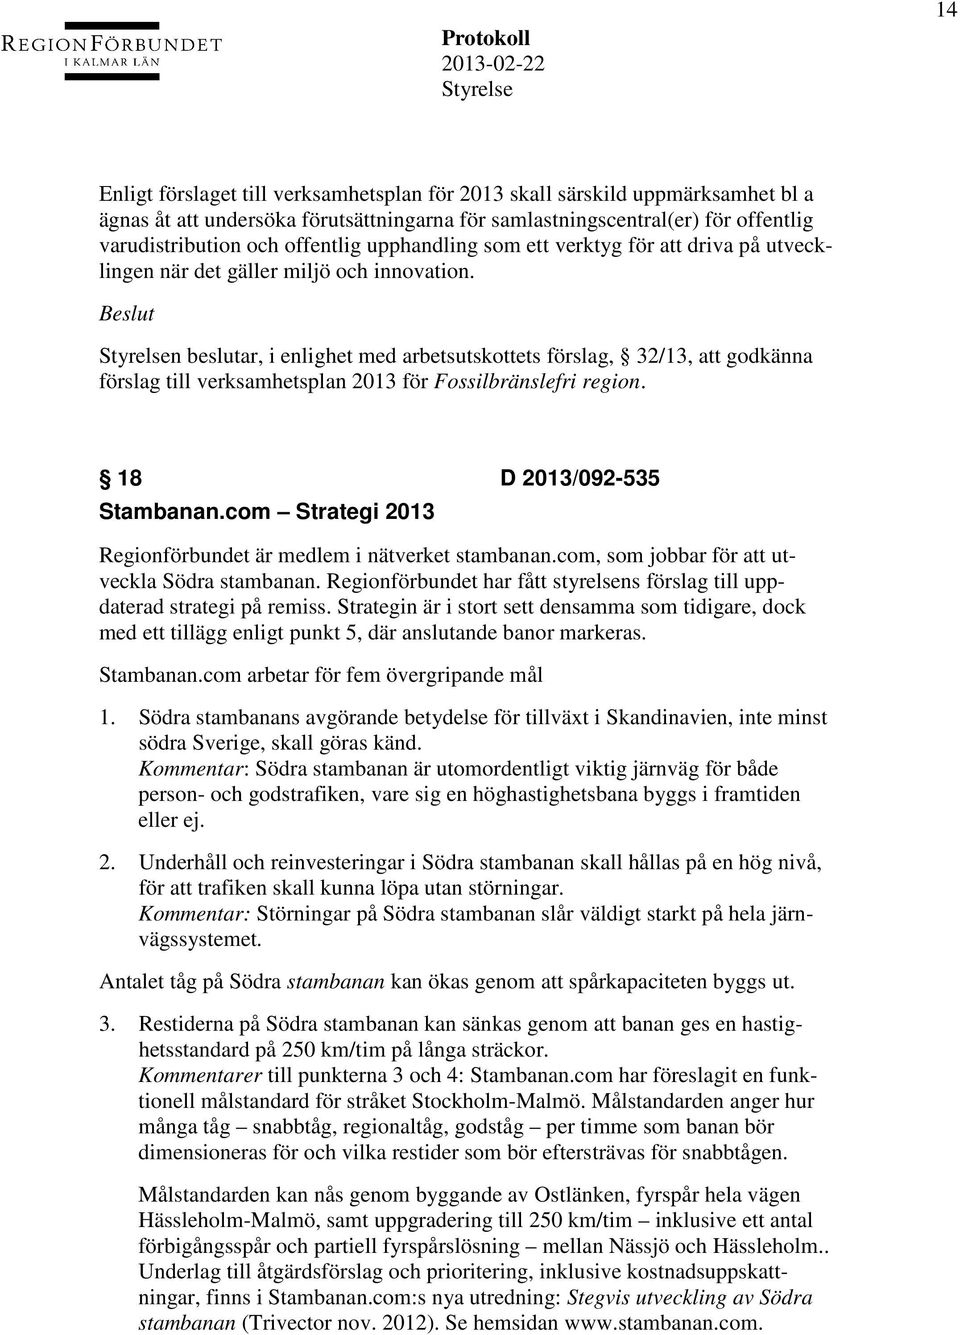 n beslutar, i enlighet med arbetsutskottets förslag, 32/13, att godkänna förslag till verksamhetsplan 2013 för Fossilbränslefri region. 18 D 2013/092-535 Stambanan.